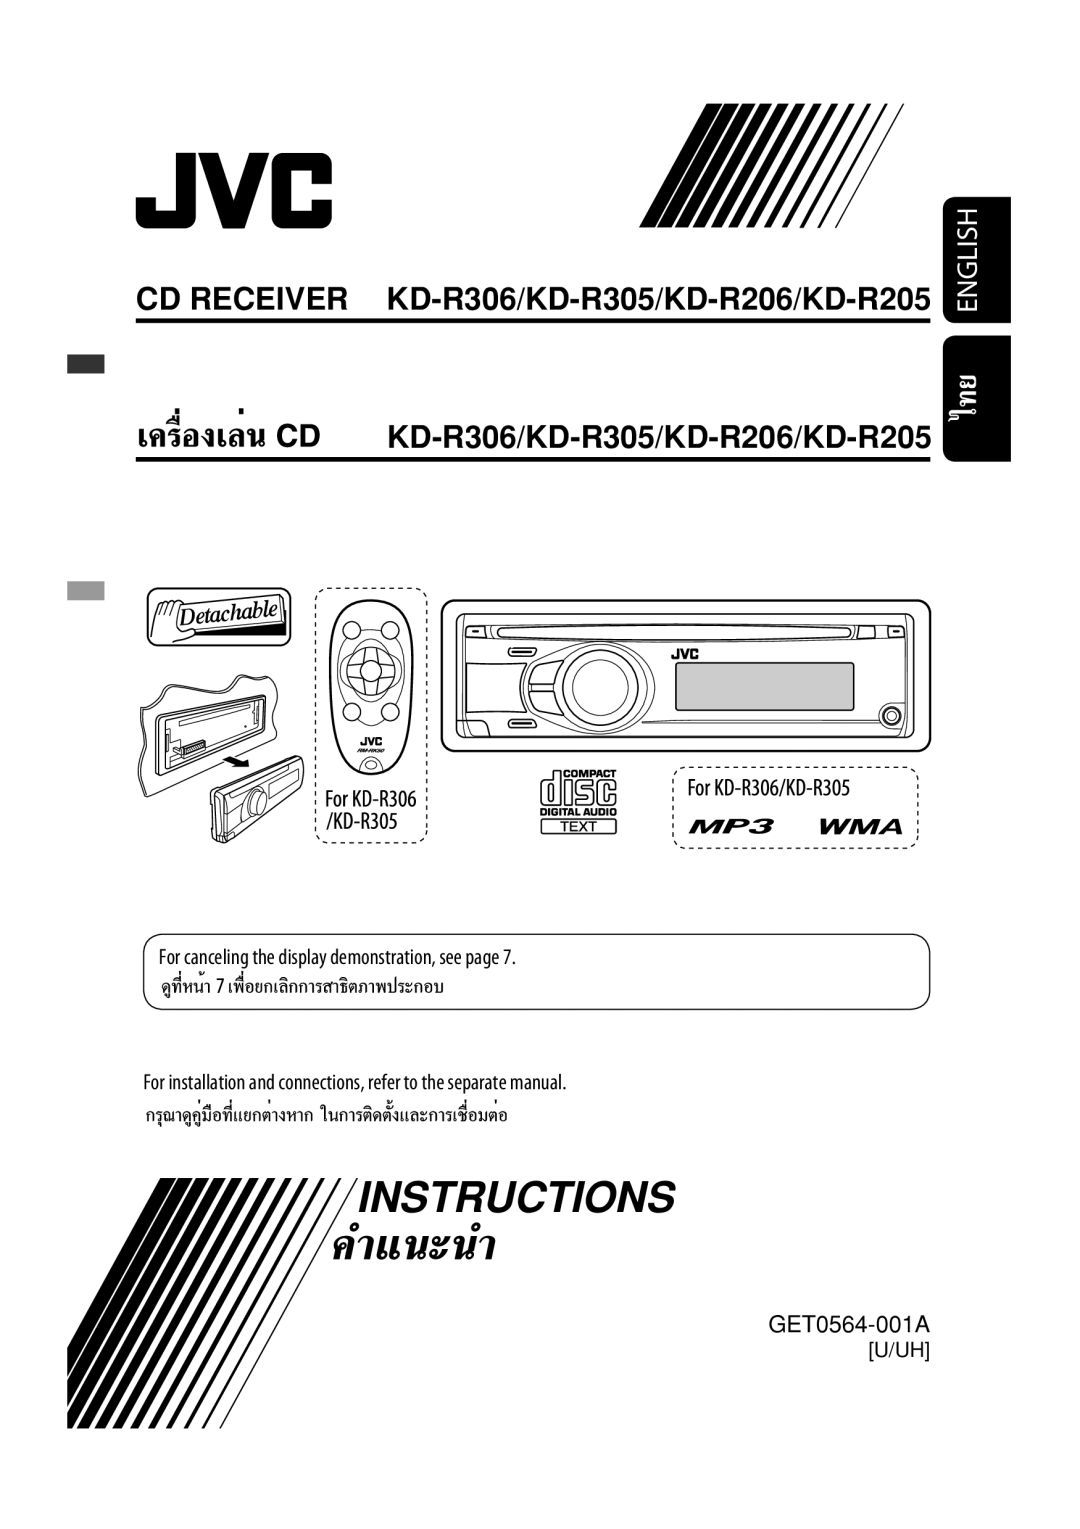 JVC KD-R301, KD-R302, KD-R303 manual CD RECEIVER KD-R306/KD-R305/KD-R206/KD-R205, GET0564-001A, Instructions, English, U/Uh 